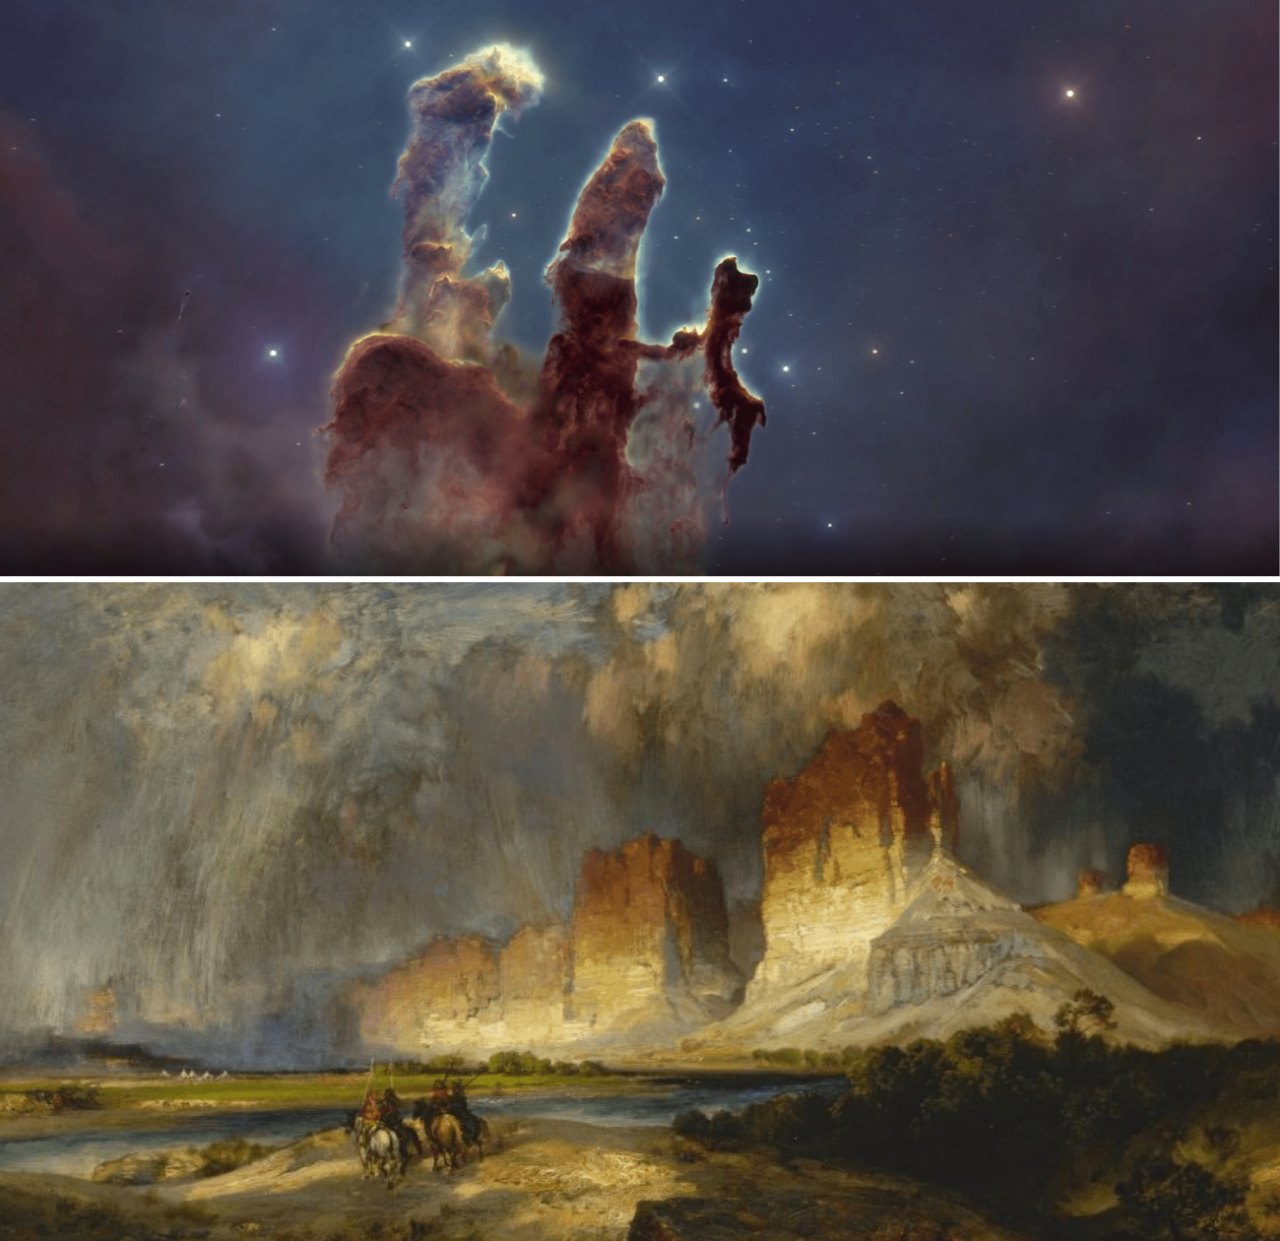 Los Pilares de la Creacion tomada por el telescopio Hubble y Acantilados del rio Colorado del artista Thomas Moran